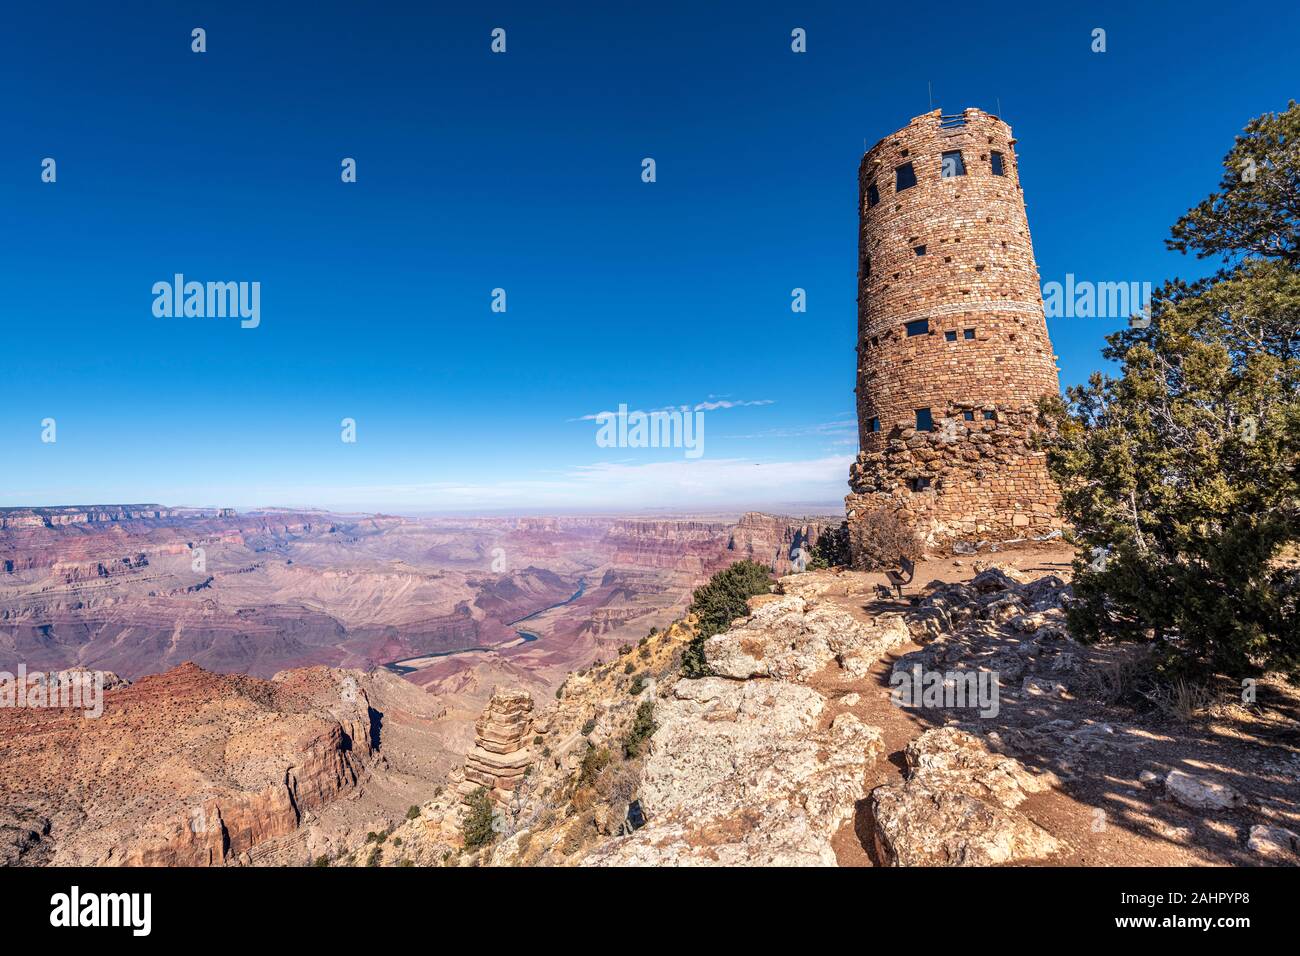 Une vue panoramique sur les montagnes de Grand Canyon Desert View Watchtower formulée contre un ciel bleu. Banque D'Images